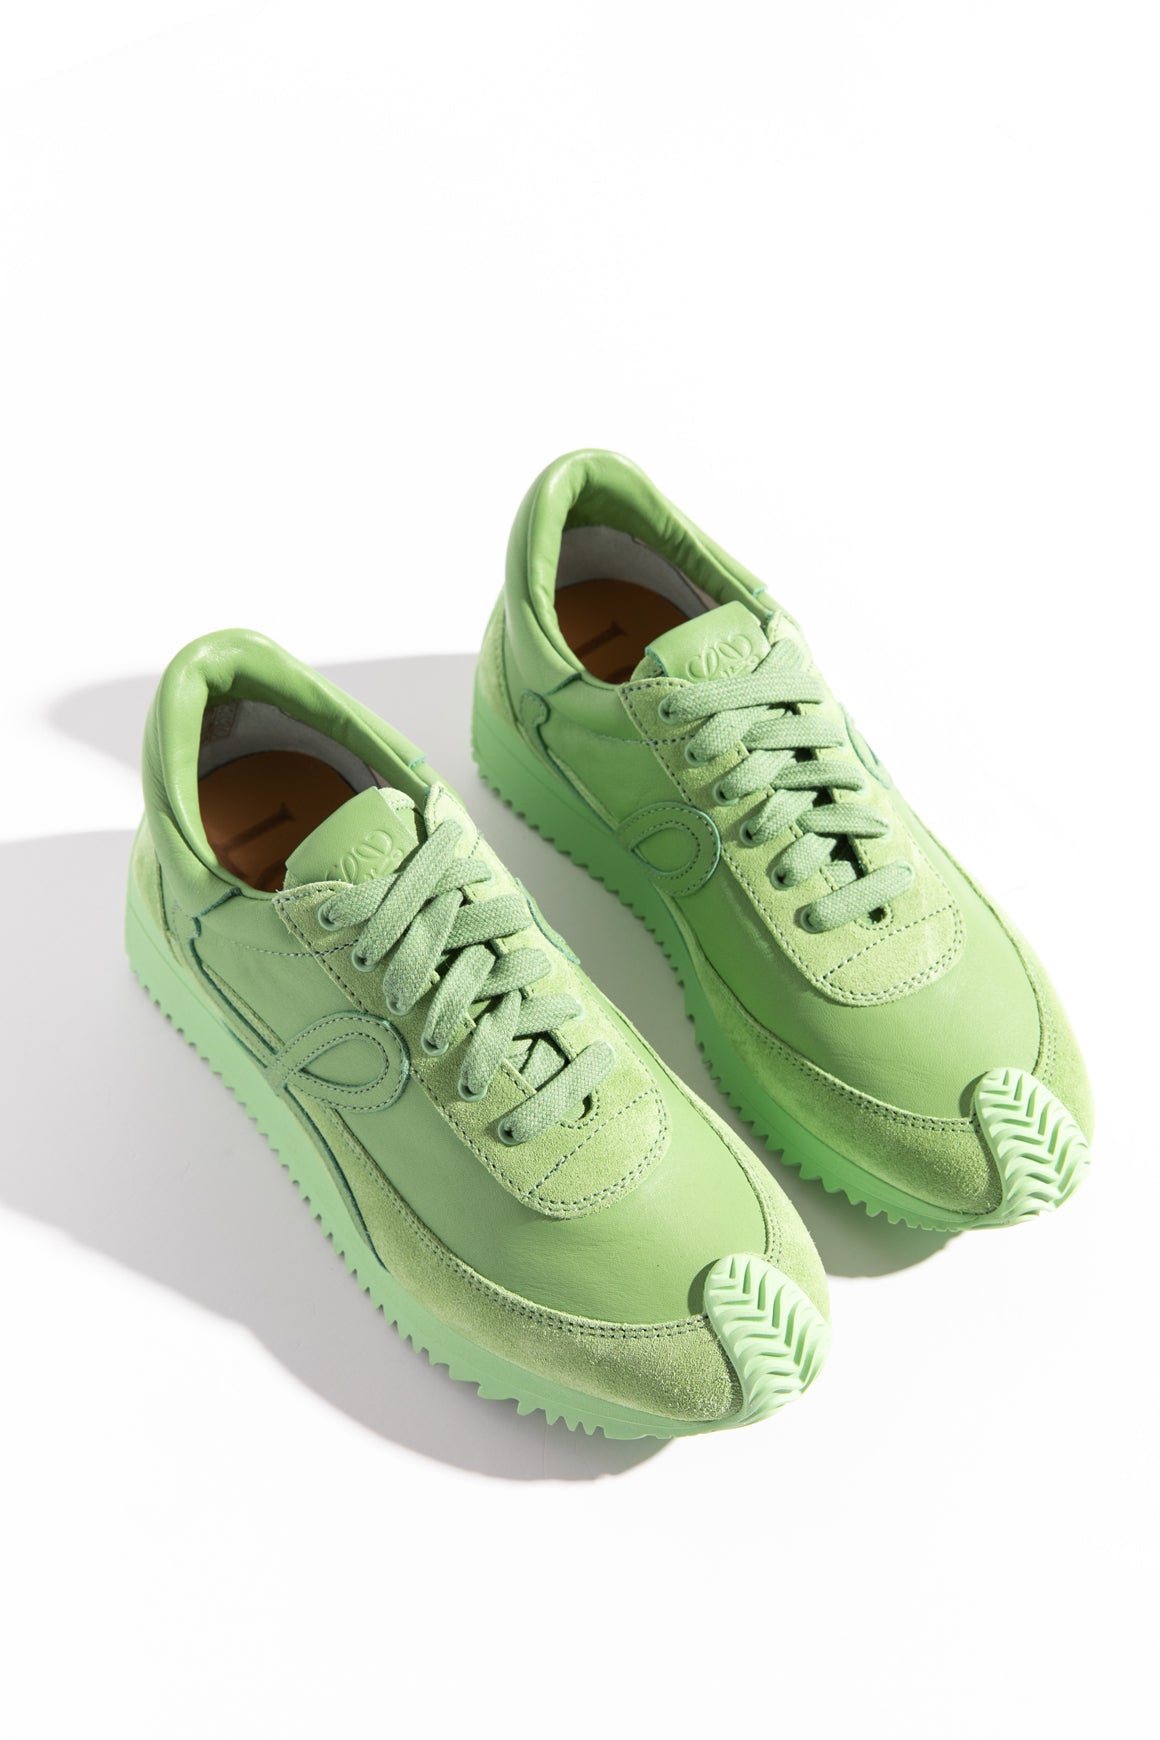 LOEWE Green Sneakers (Sz. 36)